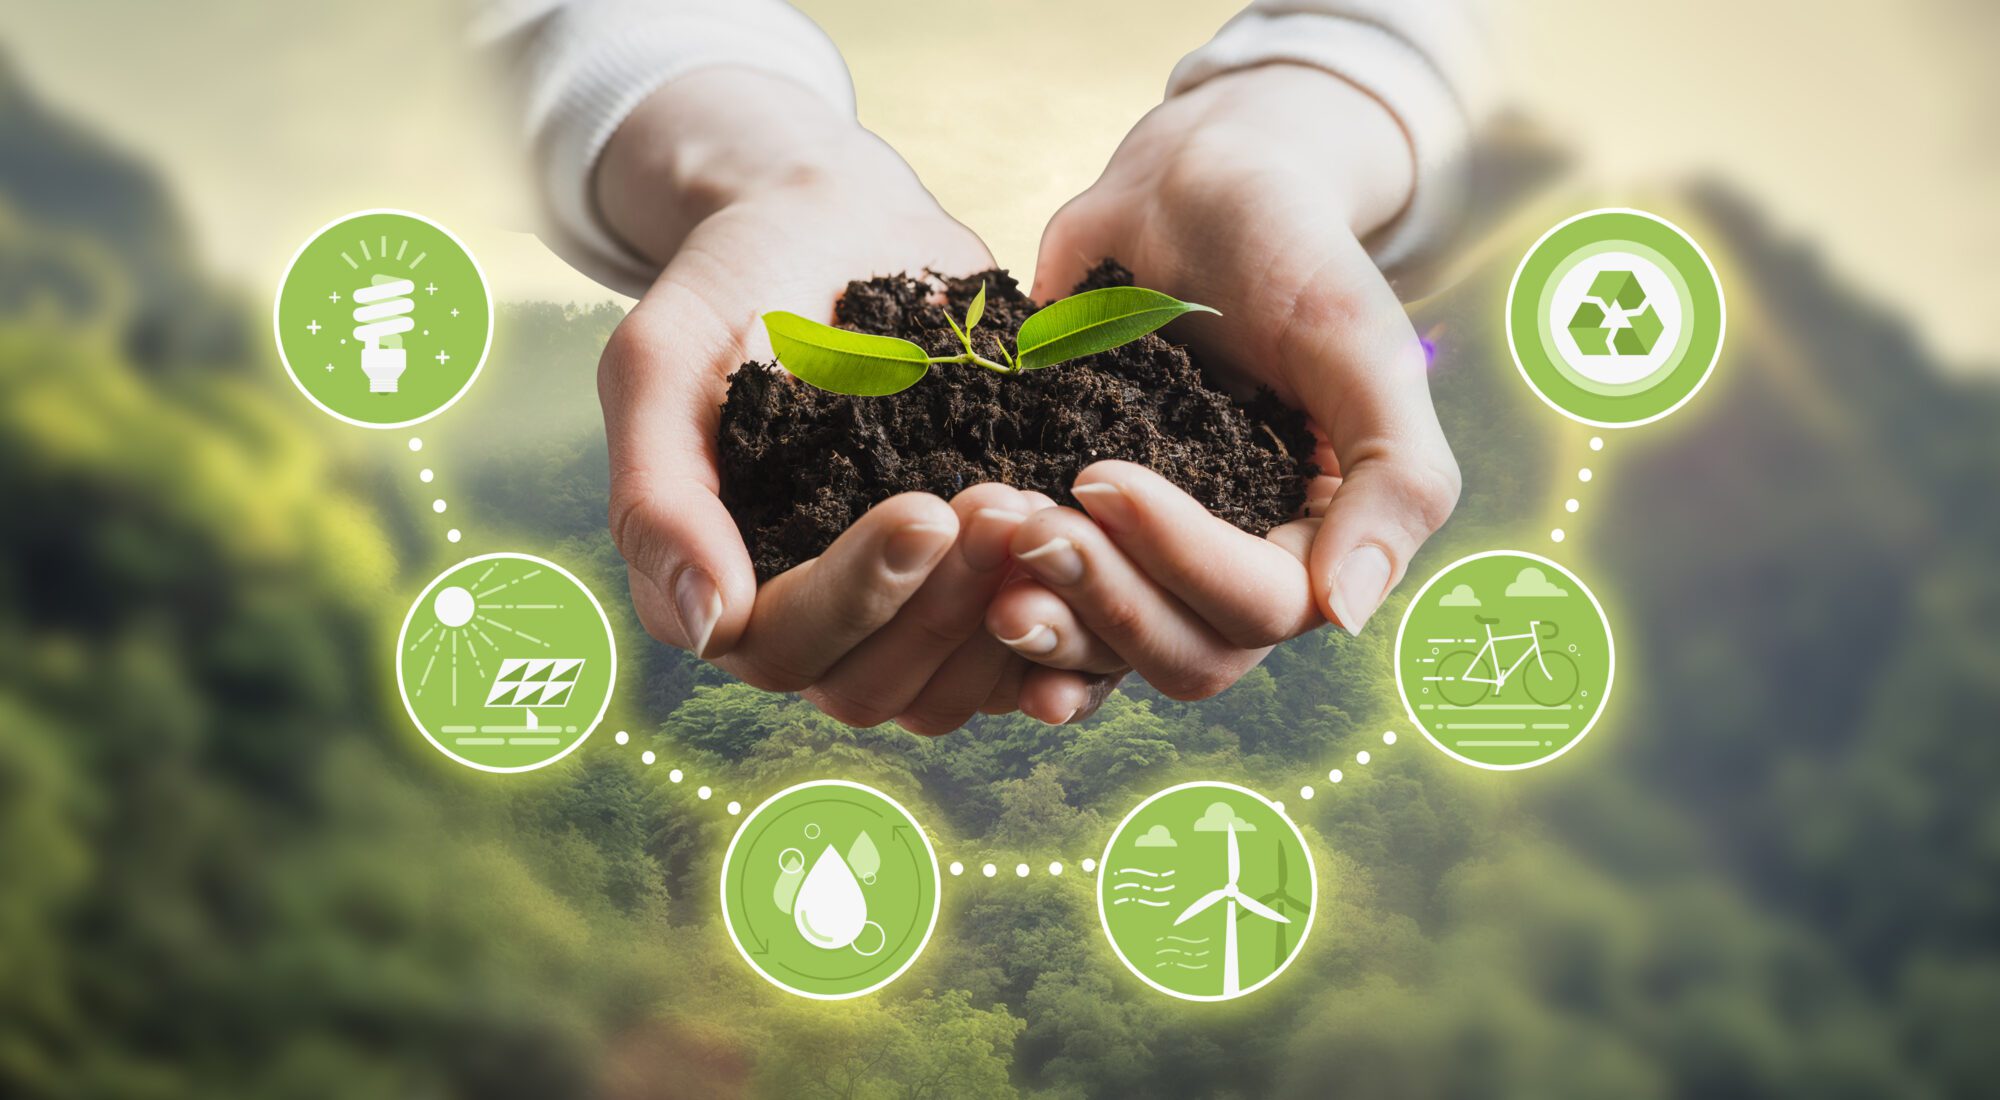 Yara mostrará en “Tecnobio” sus propuestas para descarbonizar la agricultura